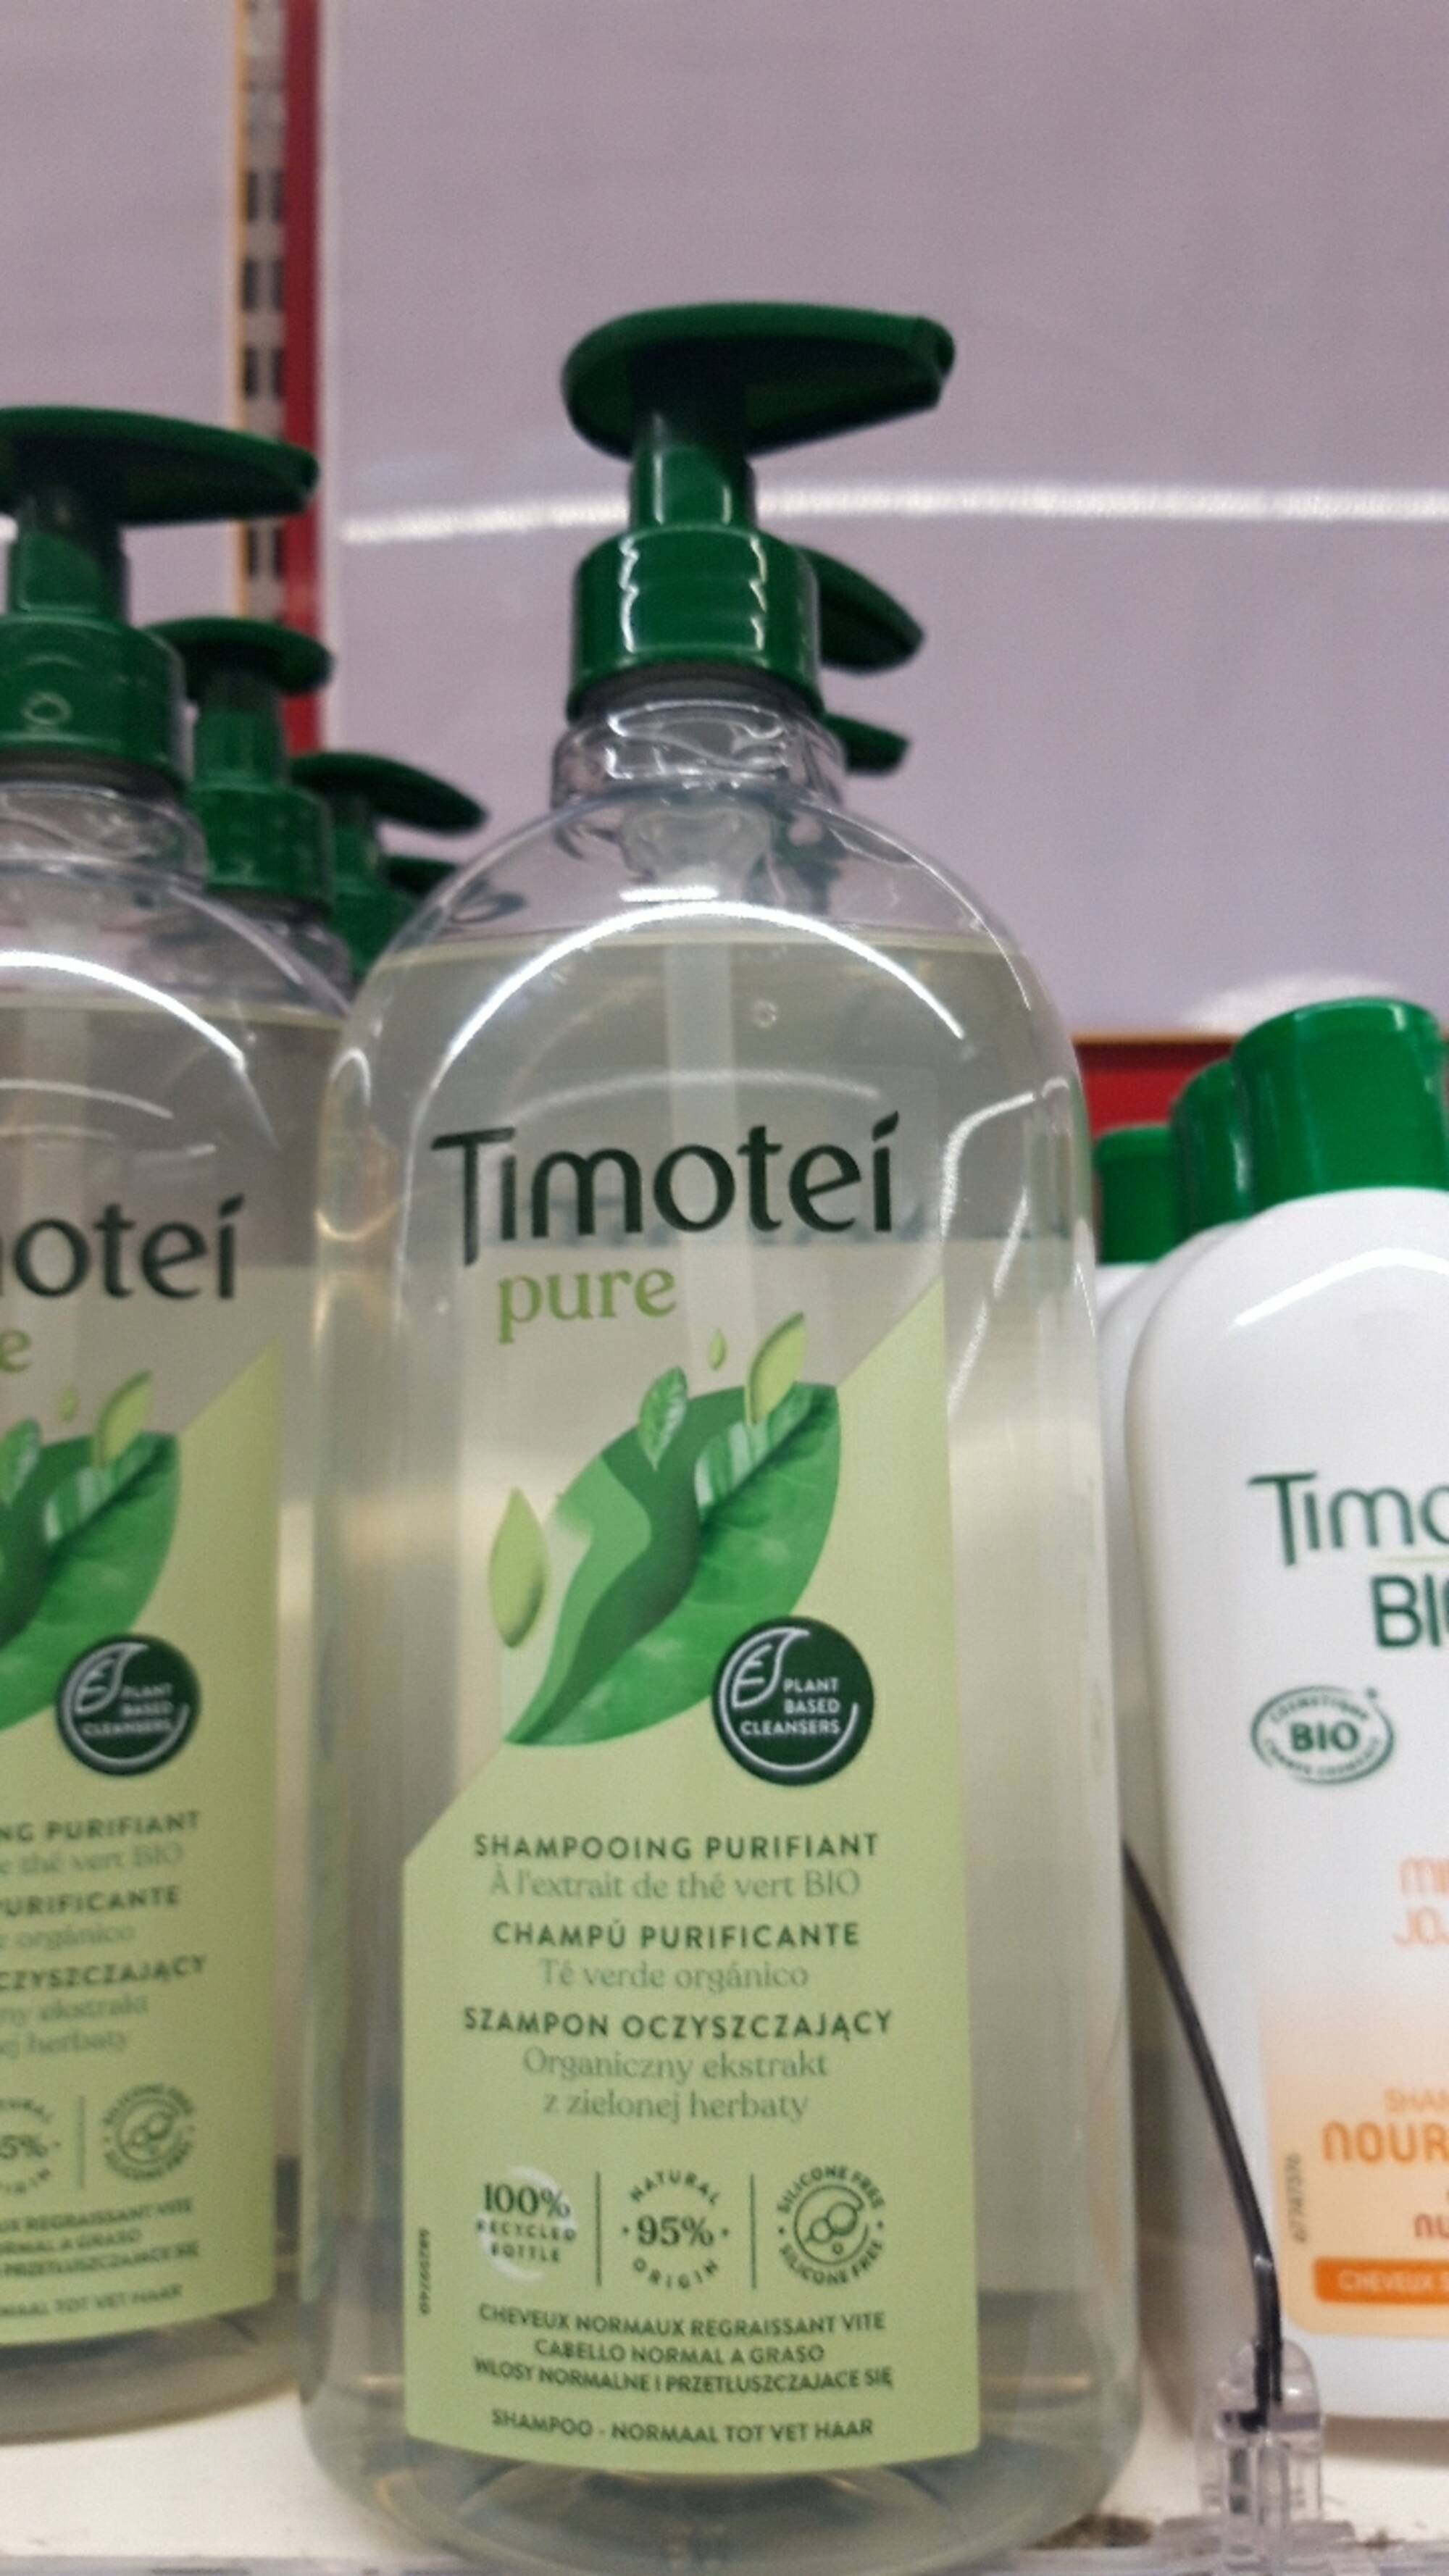 TIMOTEI - Pure - Shampooing purifiant à l'extrait de thé vert bio